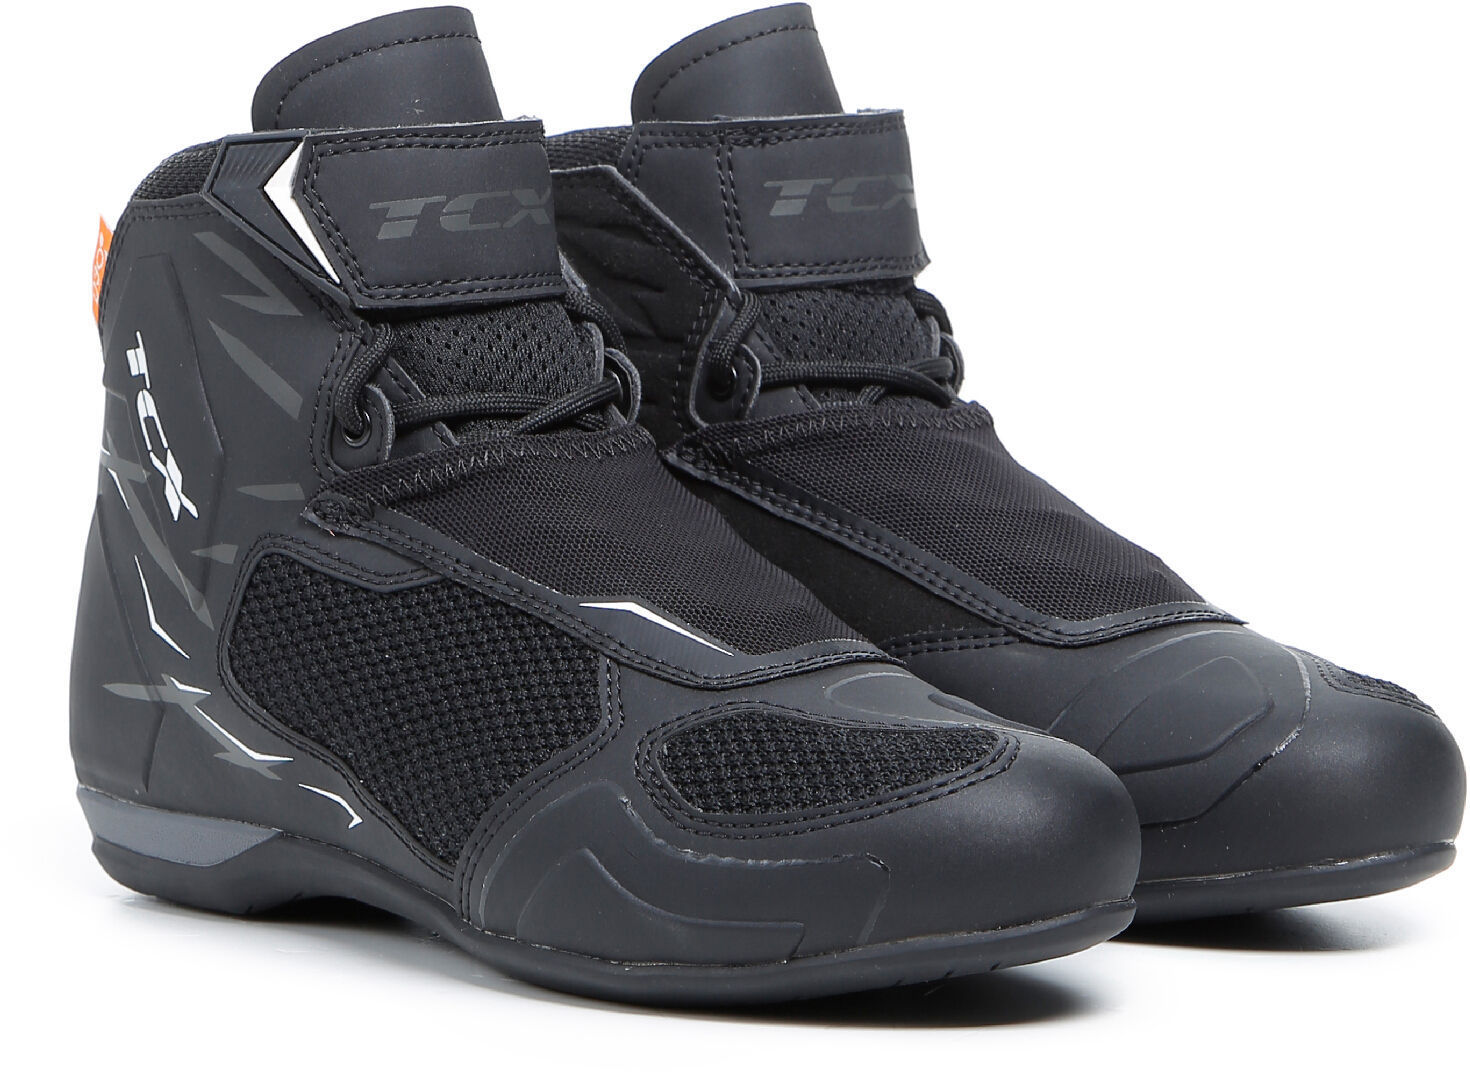 TCX RO4D Air Zapatos de motocicleta para damas - Negro Blanco (37)